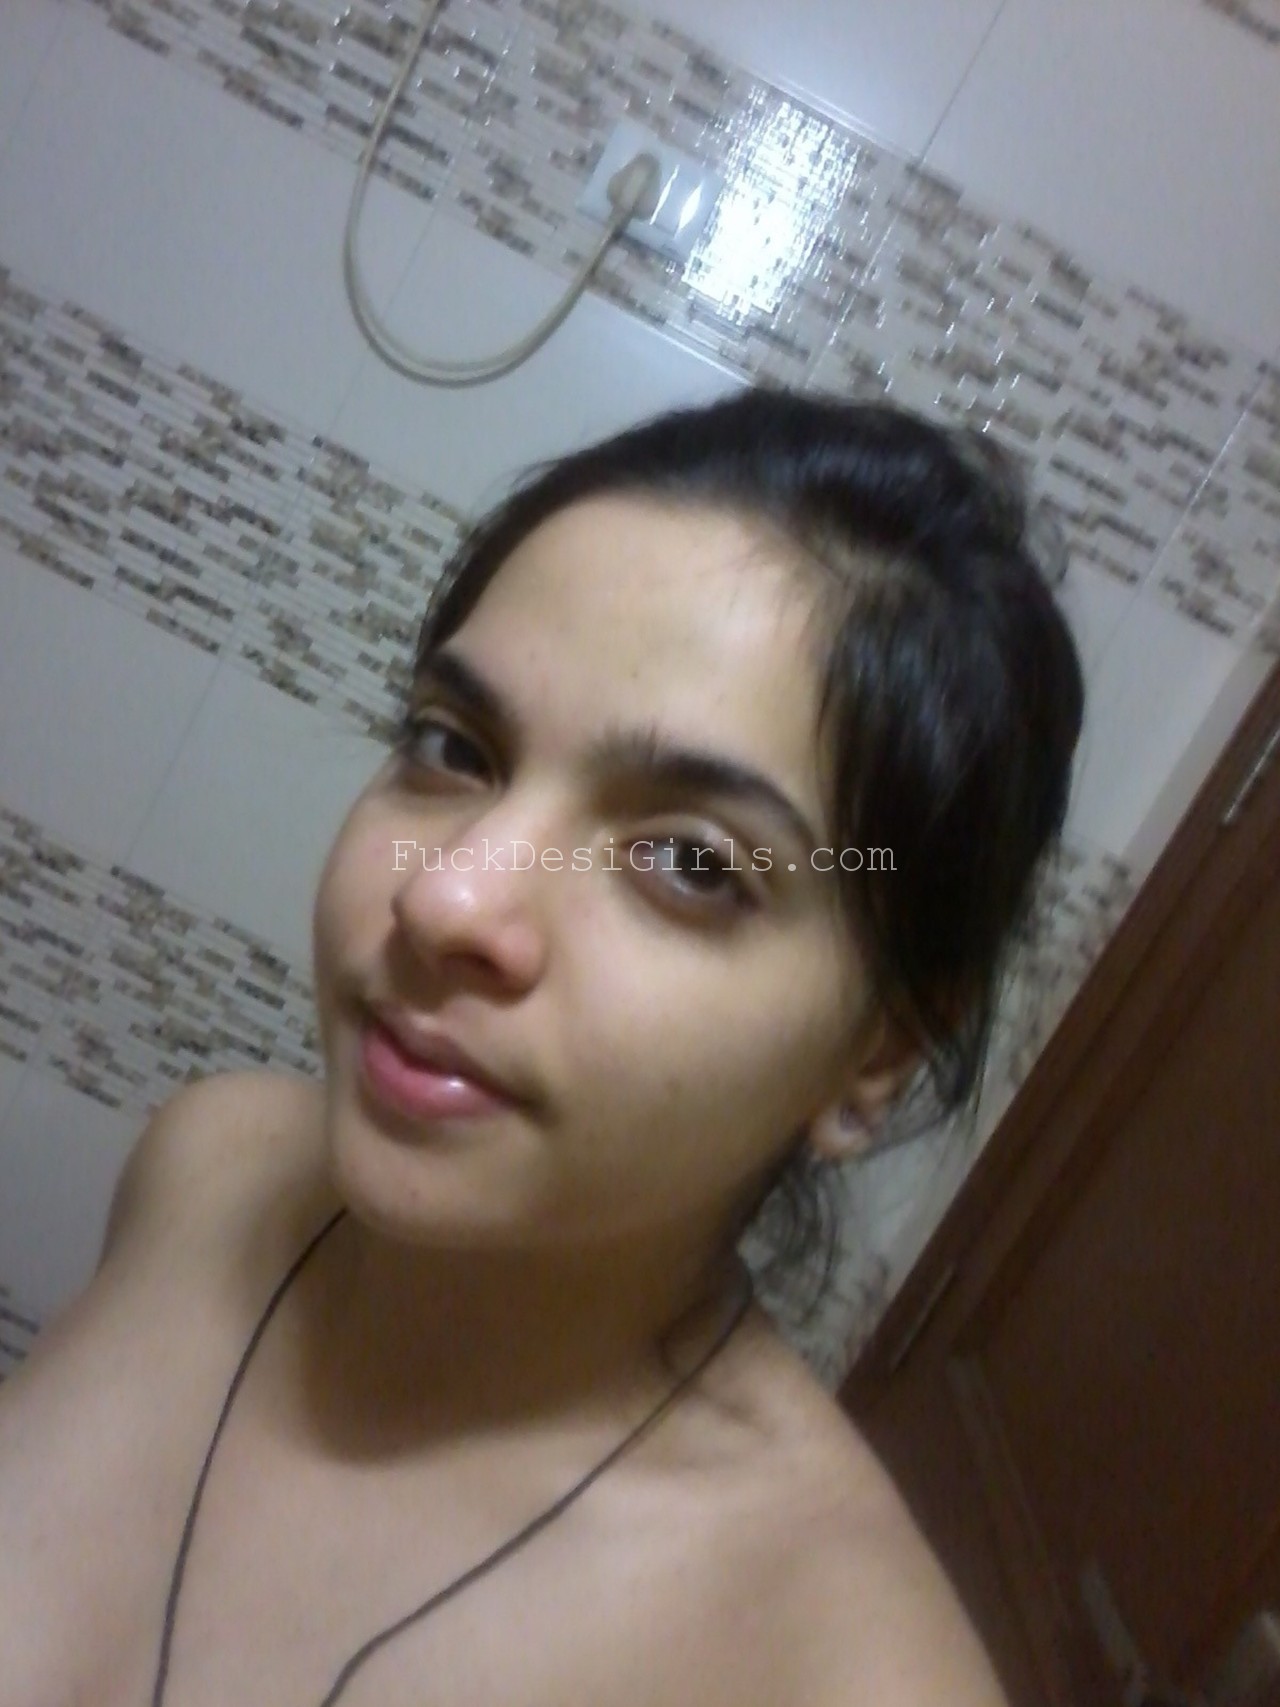 Desi girl bathroom selfie